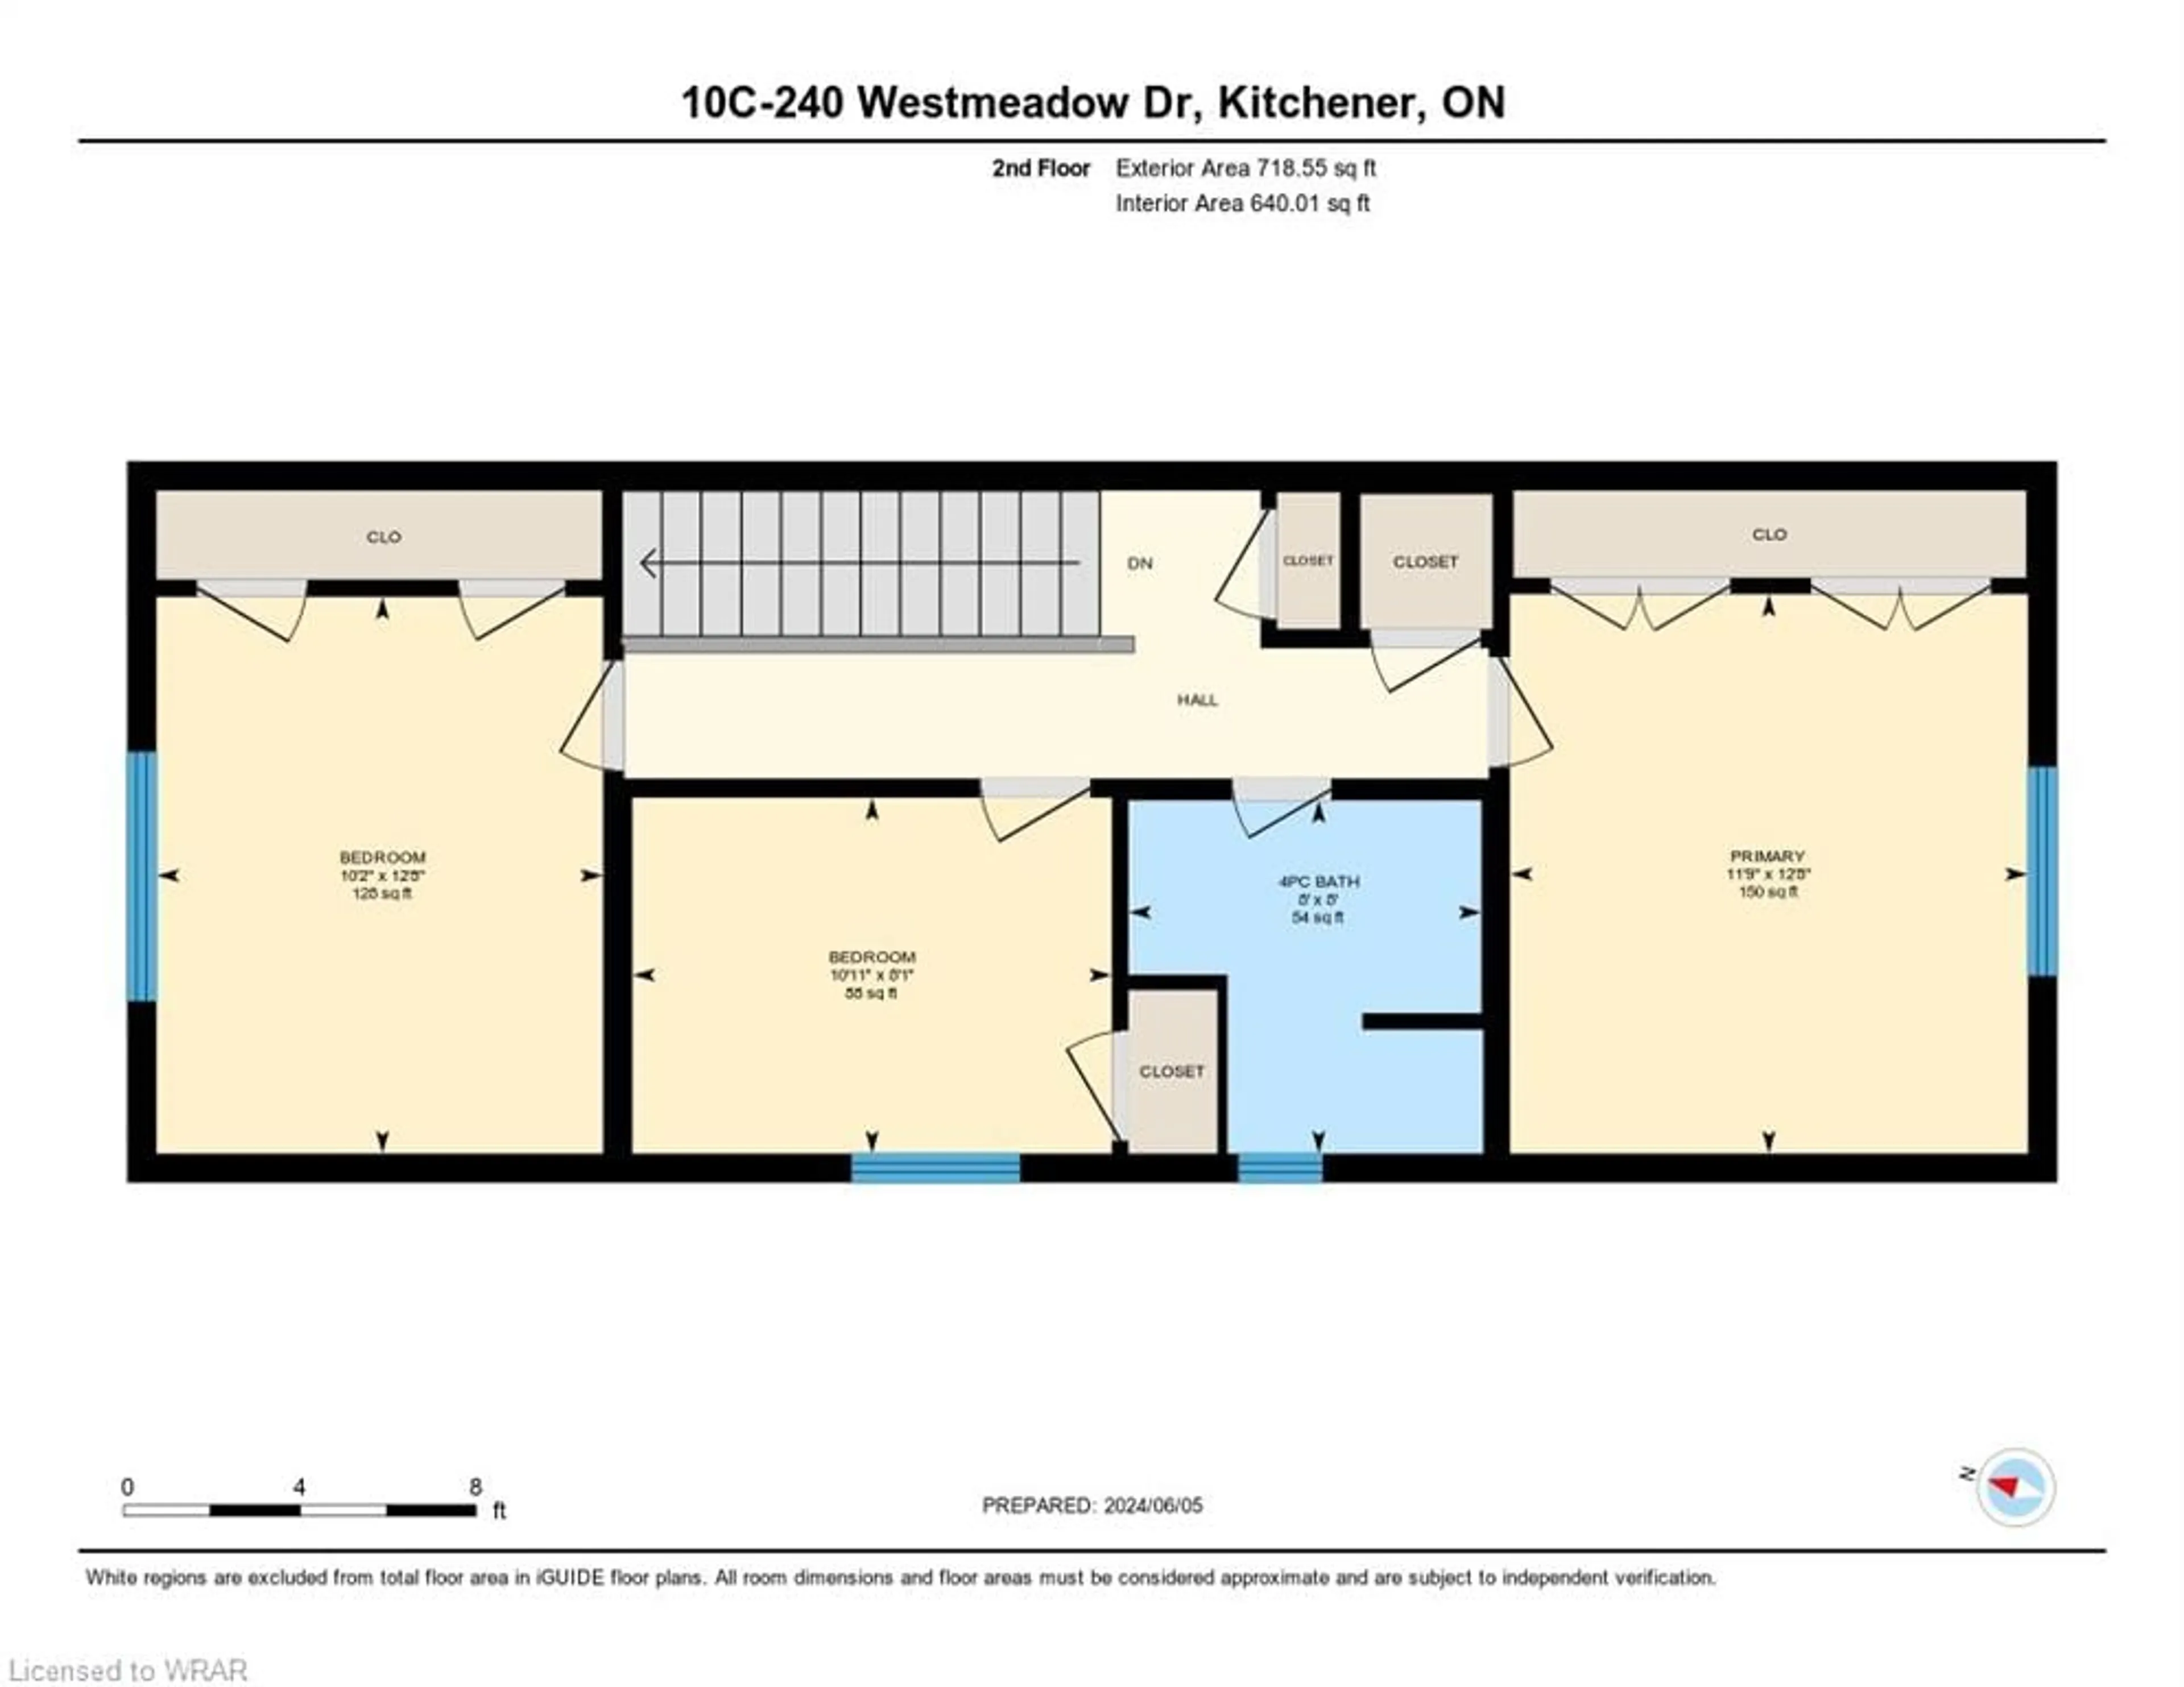 Floor plan for 240 Westmeadow Dr #10C, Kitchener Ontario N2N 0A1